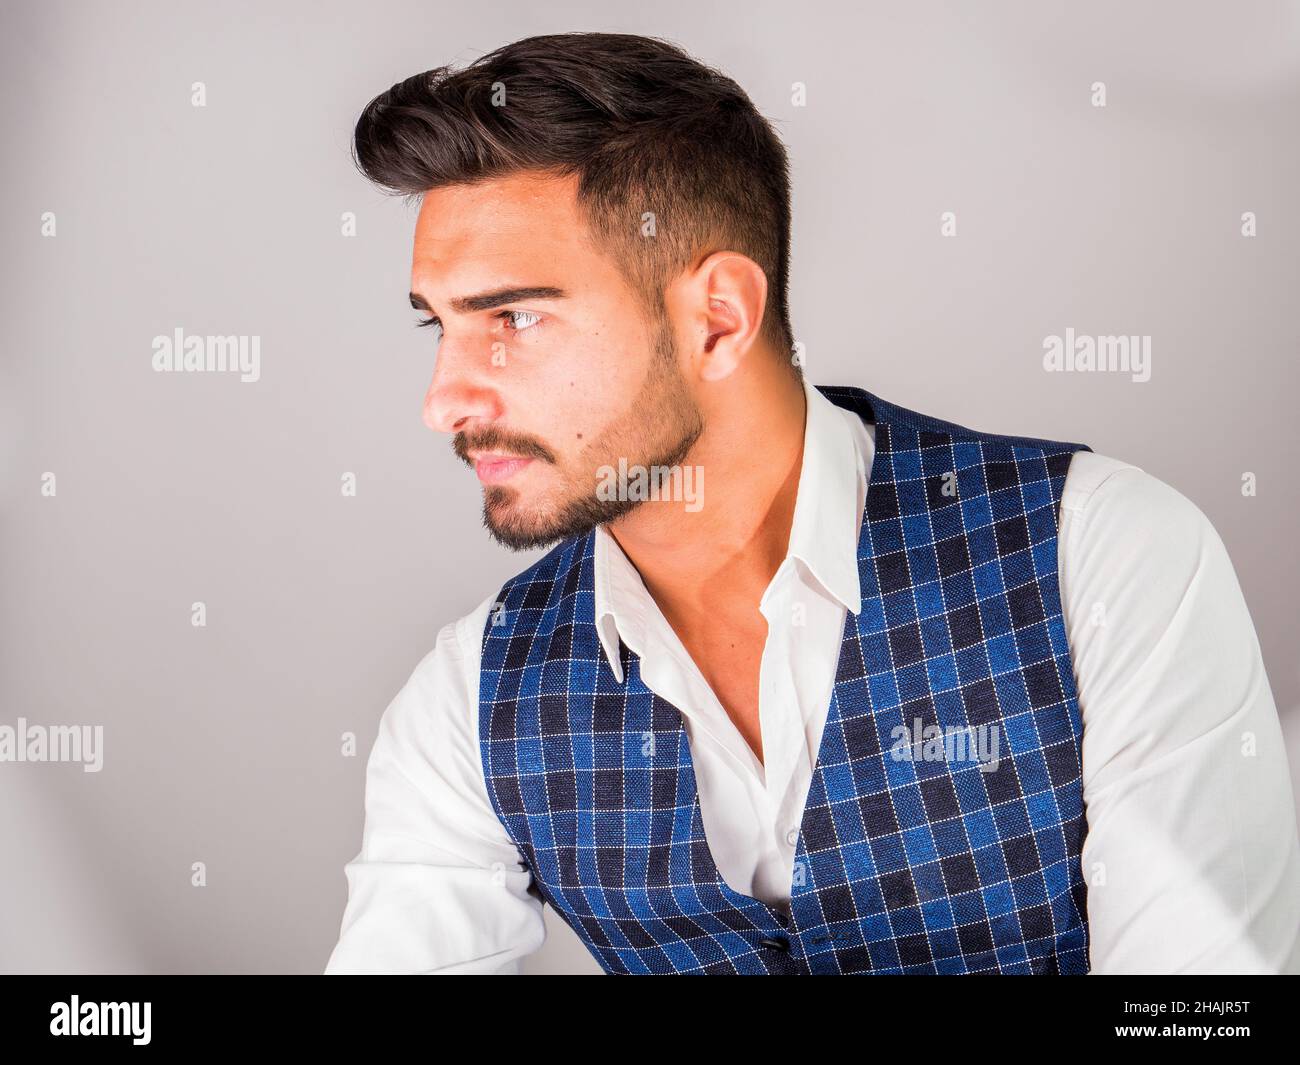 Trendy young man in studio shot wearing elegant vest Stock Photo